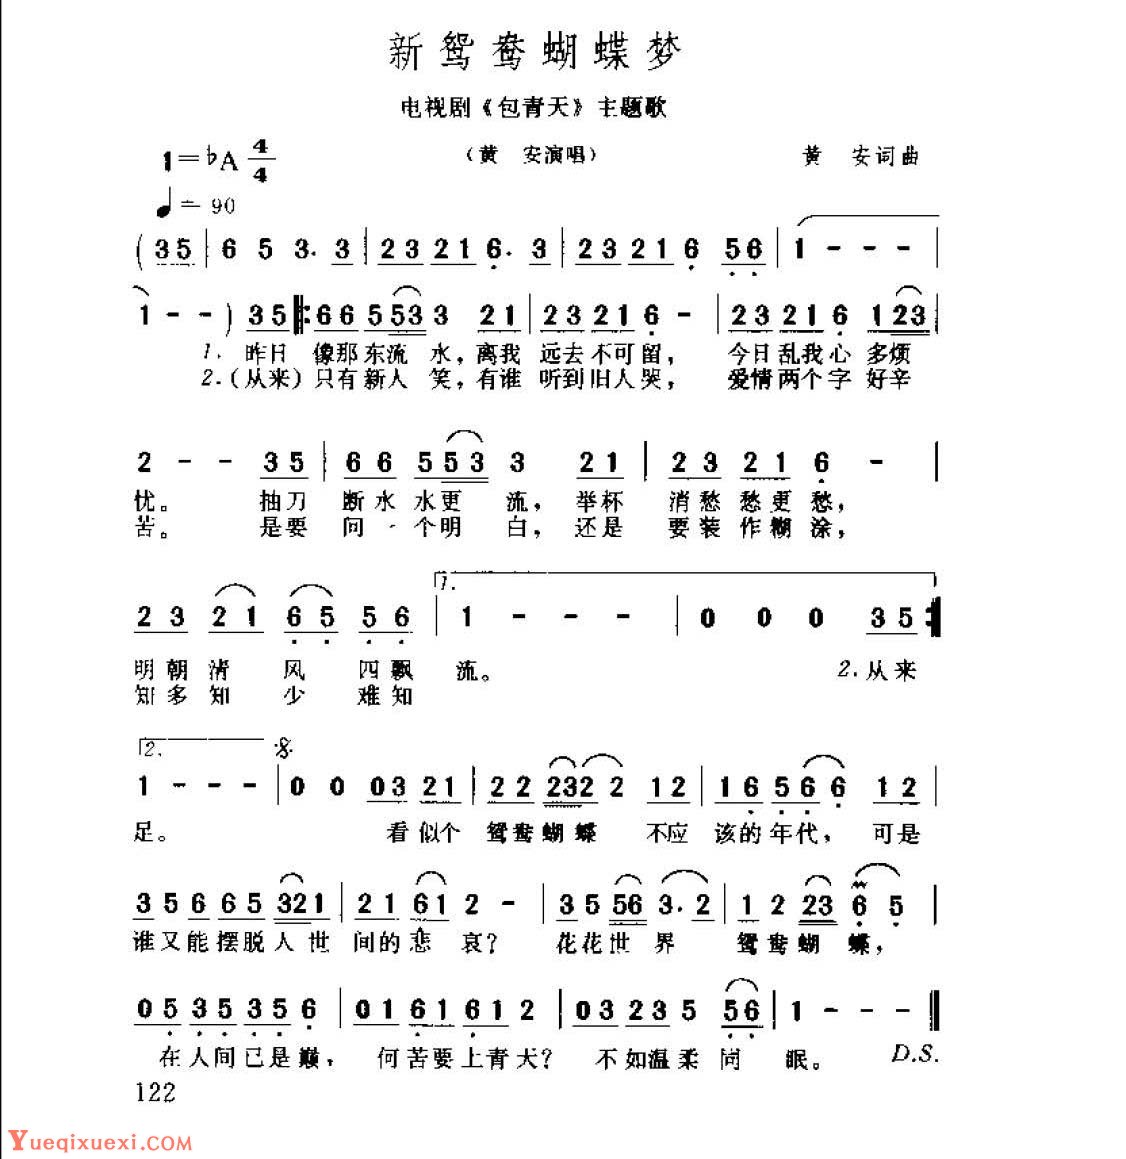 新鸳鸯蝴蝶梦电视剧《包青天》主题歌&1992  黄安词曲